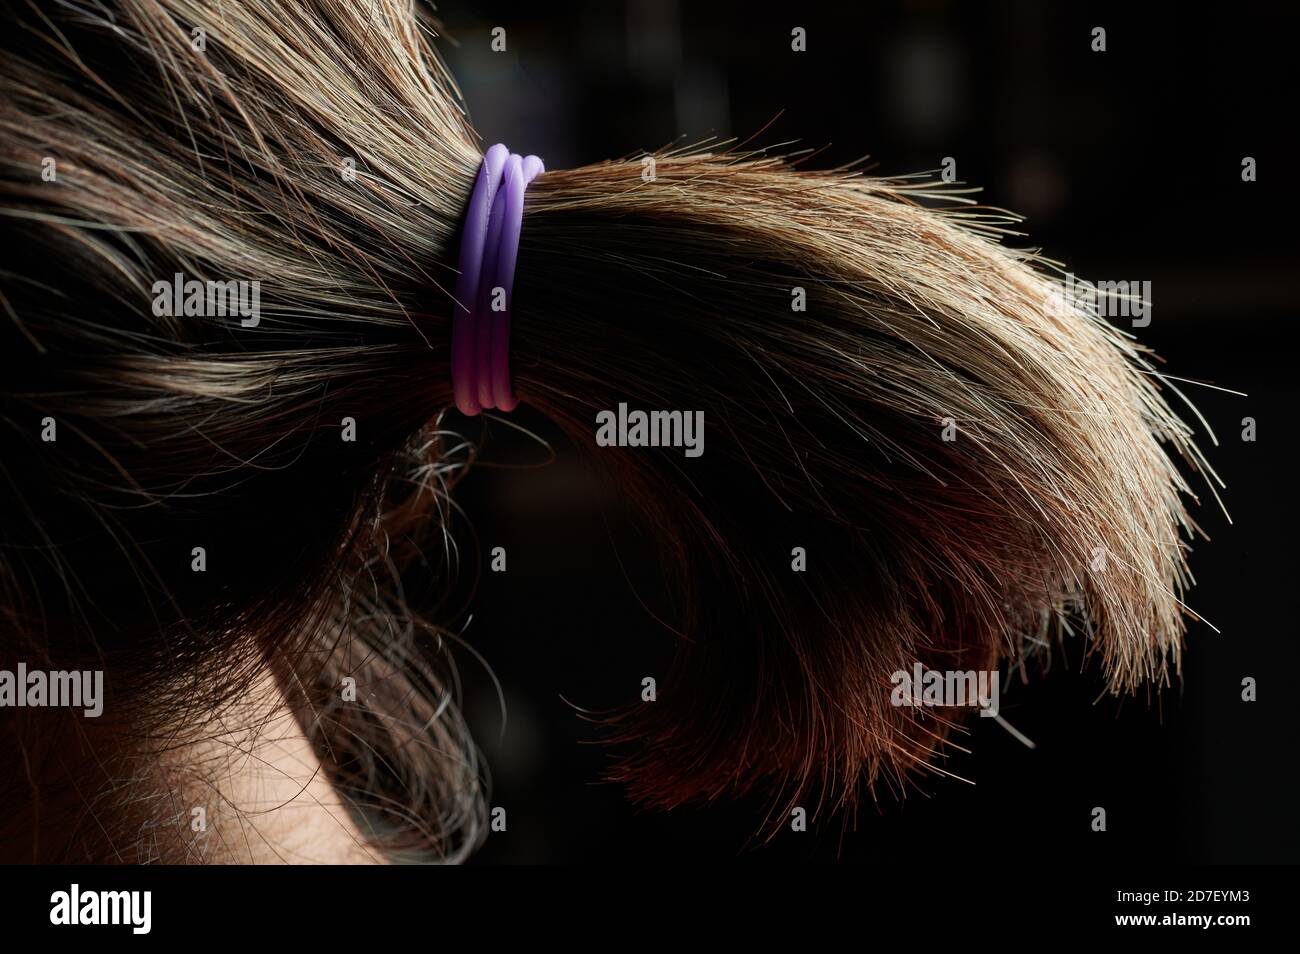 Coiffure de queue de poney vue latérale des cheveux de couleur foncée Banque D'Images